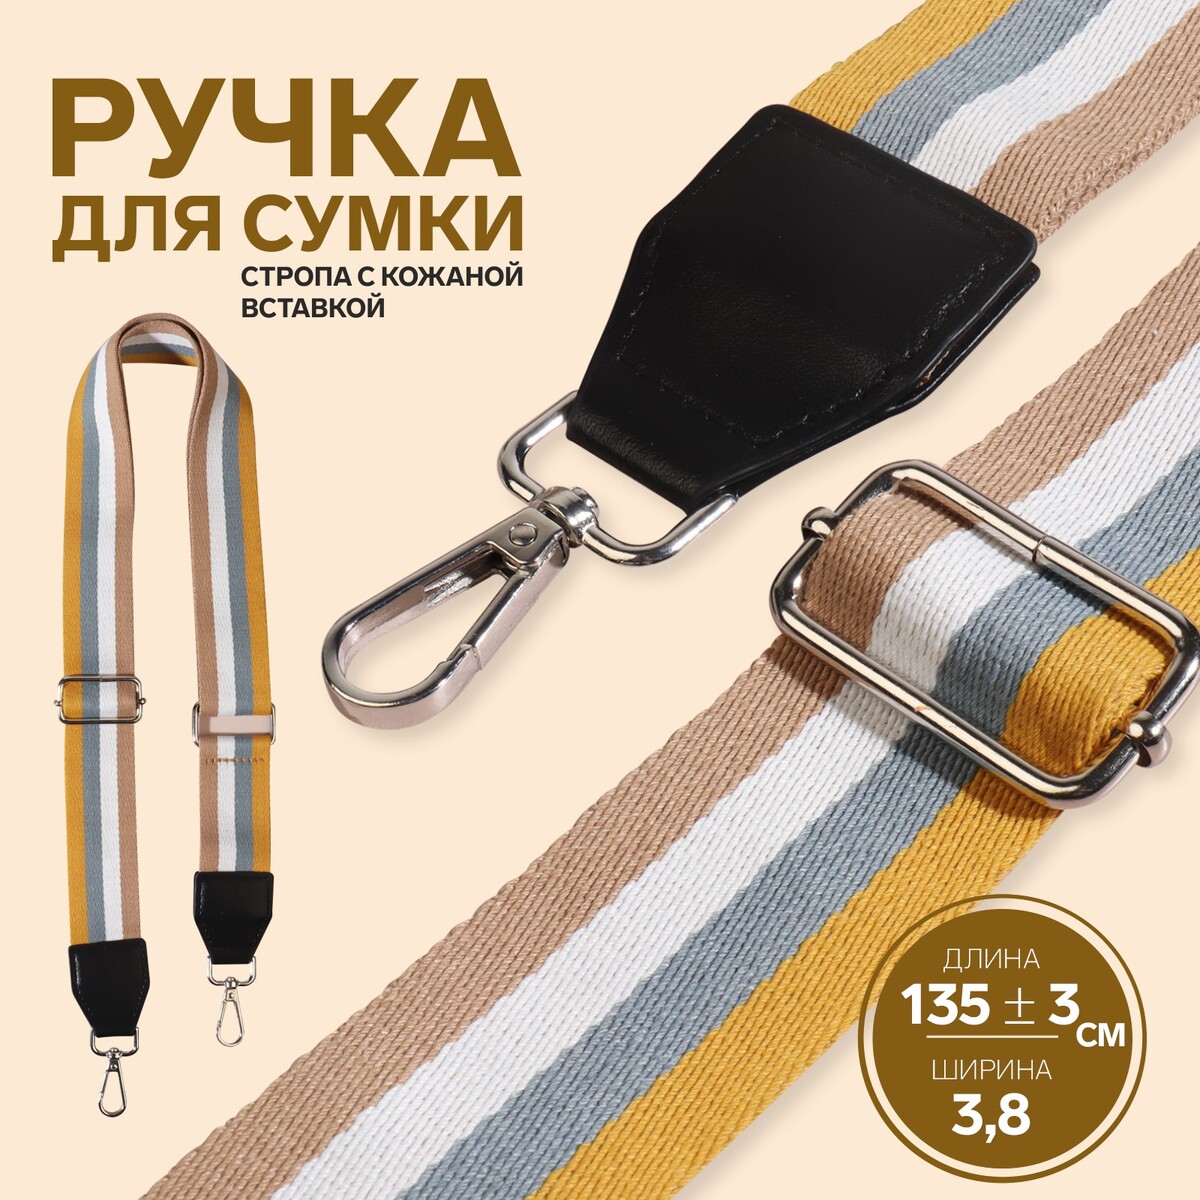 Ручка для сумки, стропа с кожаной вставкой, 135 ± 3 × 3,8 см, цвет желтый/серый/белый/бежевый 3d ручка myriwell rp200b желтый